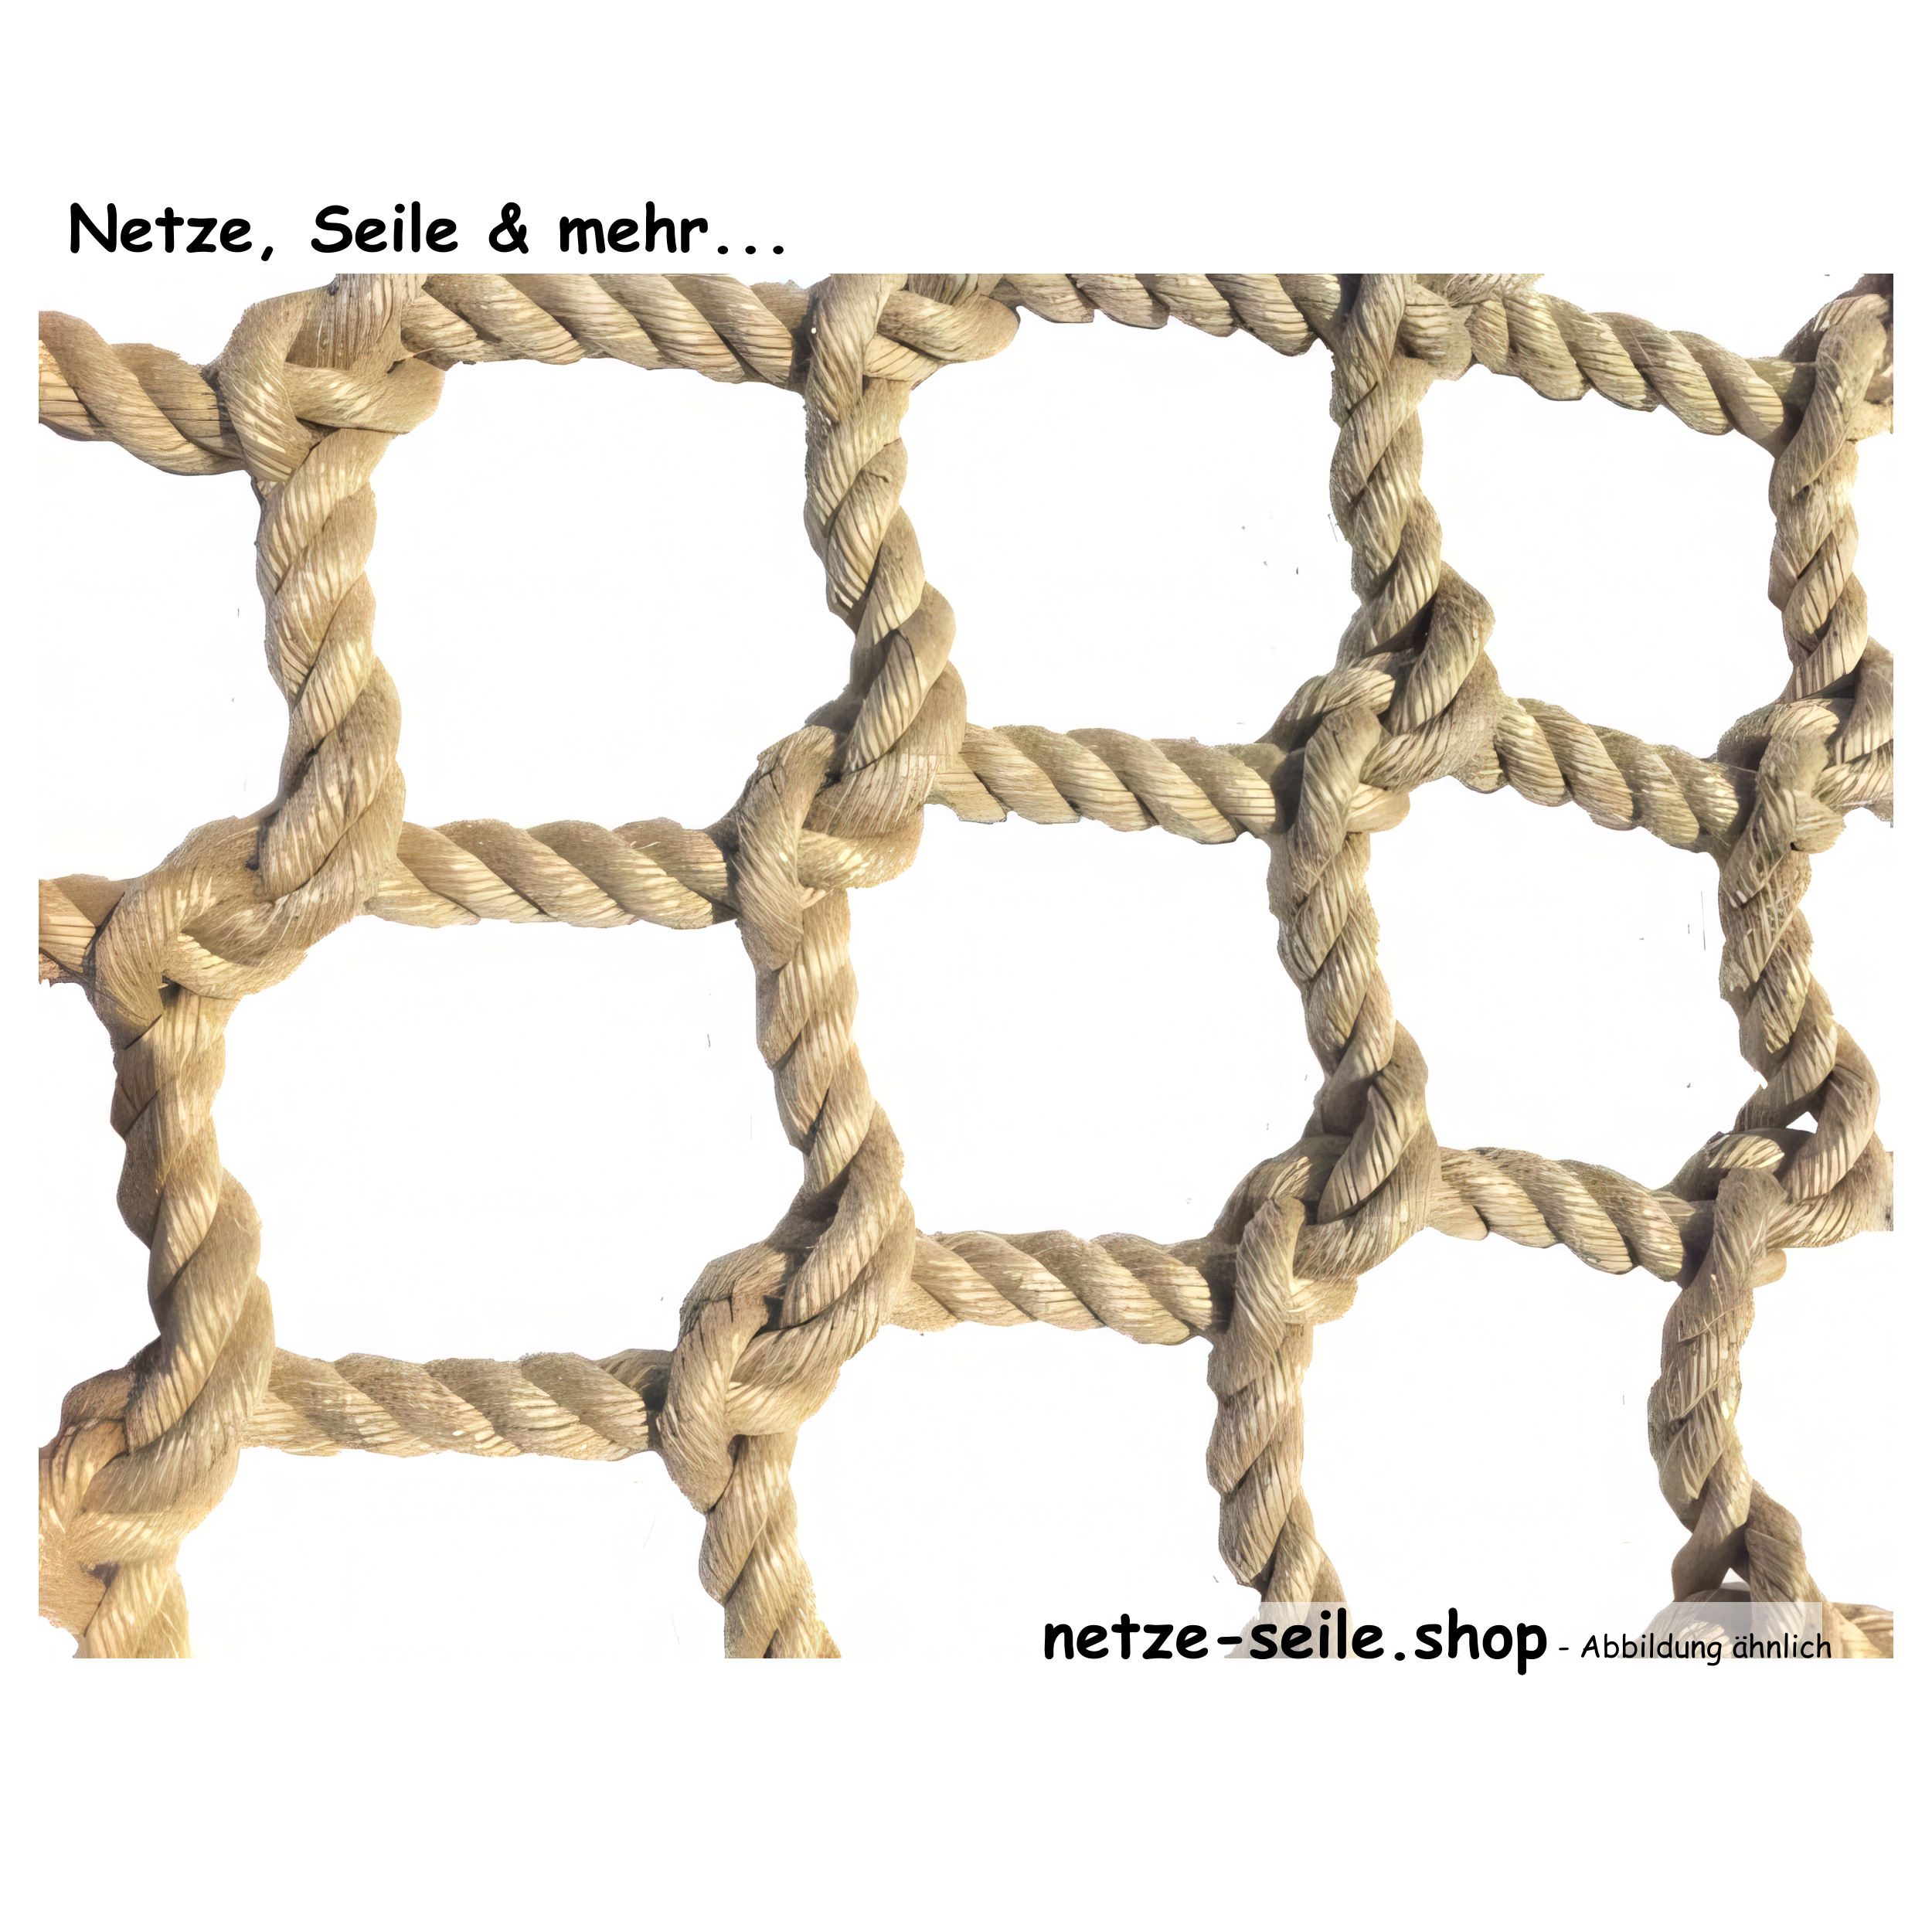 Climbing net made of Ø 16 mm PP spun fibre rope, # 100 mm mesh size, knots spliced by hand